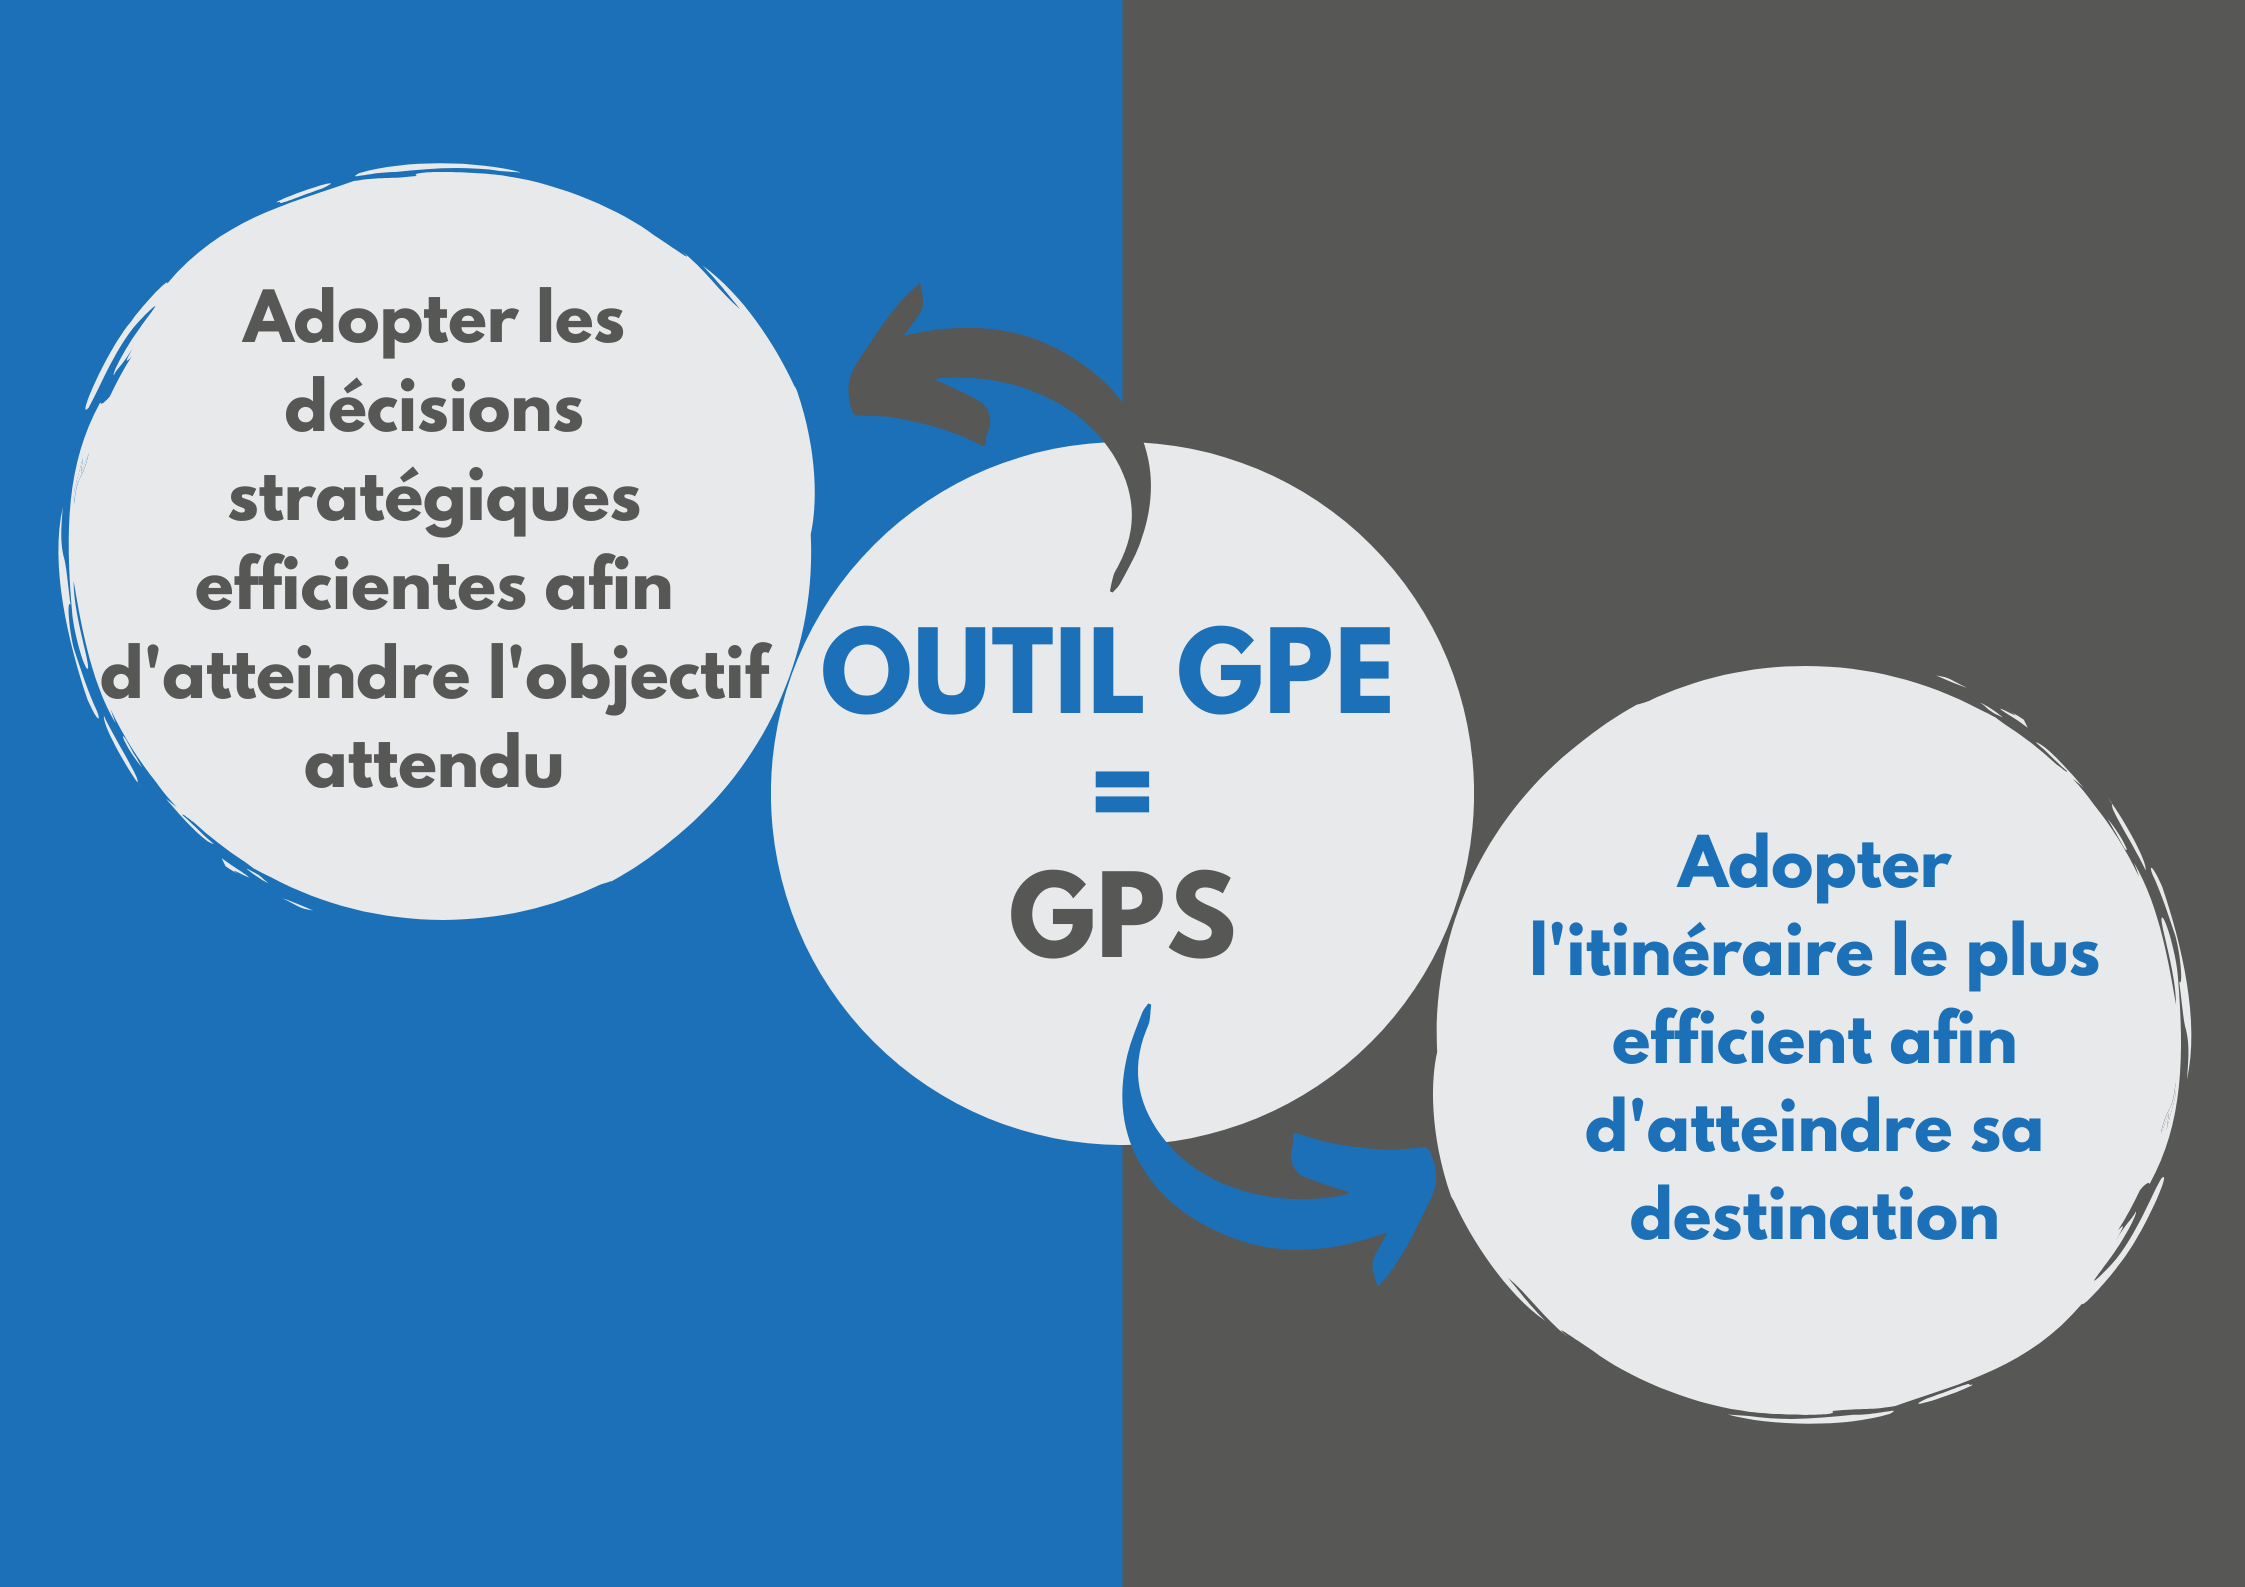 Le GPE permet d’adopter les décisions stratégiques efficientes afin d'atteindre l'objectif comme le GPS permet d'adopter l'itinéraire le plus efficient pour atteindre la destination.